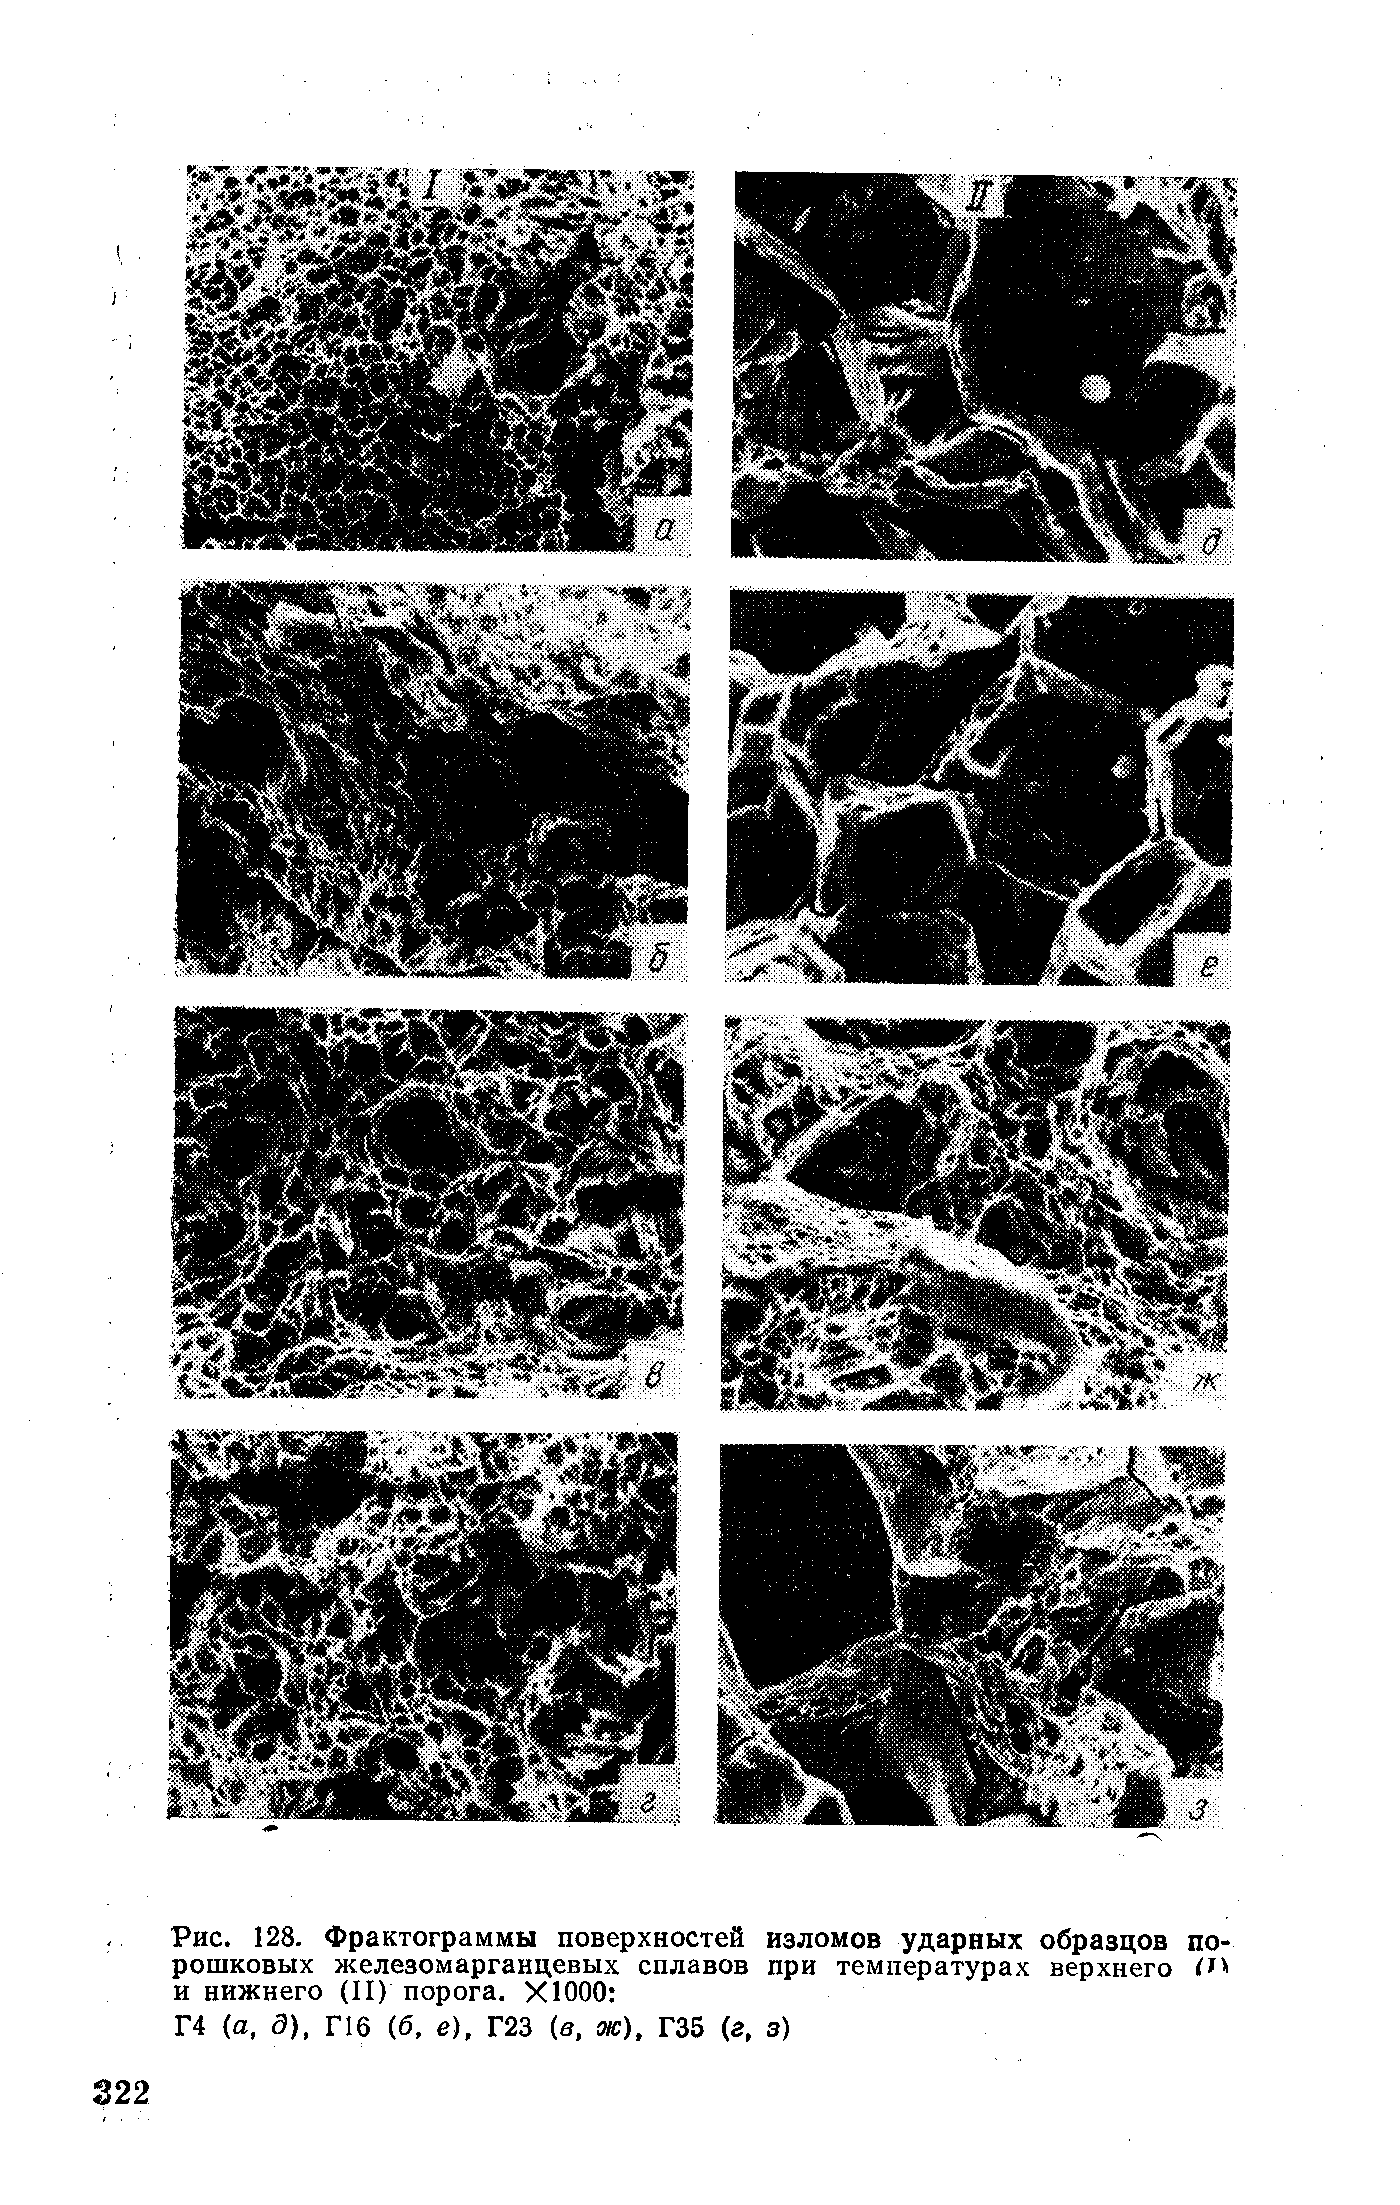 Рис. 128. Фрактограммы поверхностей изломов ударных образцов порошковых железомарганцевых сплавов при температурах верхнего и нижнего (II) порога. Х1000 
